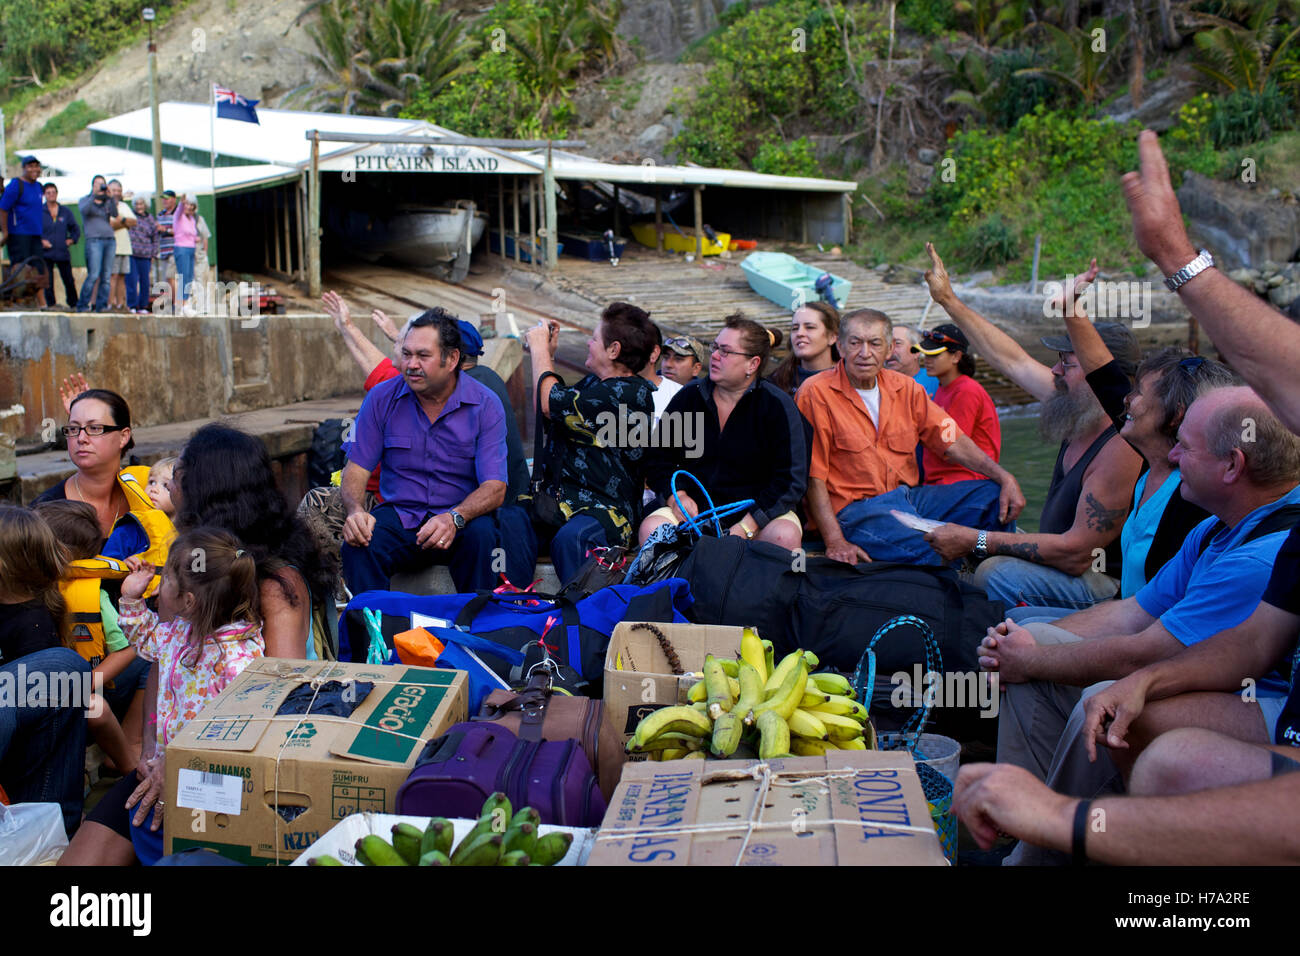 Pitcairn, Söhne von Meuterern! -03/06/2012 - Pitcairn / Pitcairn - Menschen, die Einschiffung auf die Claymore II verlassen Pitcairn Insel - Olivier Goujon / Le Pictorium Stockfoto